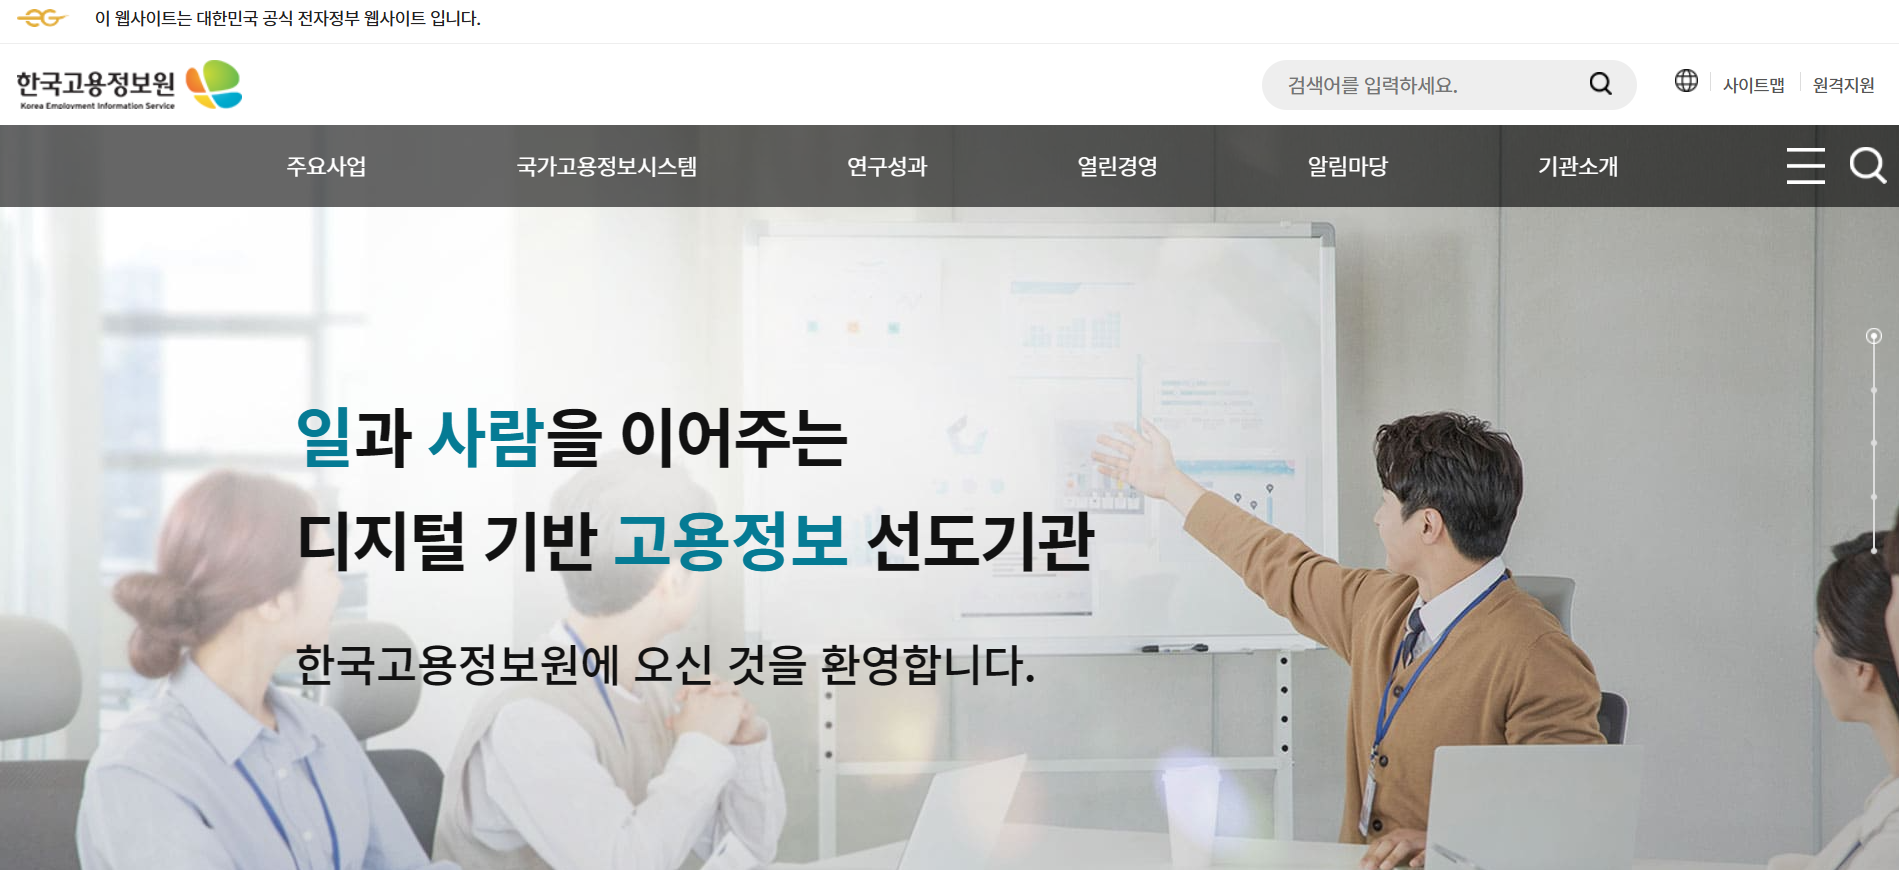 한국고용정보원 홈페이지